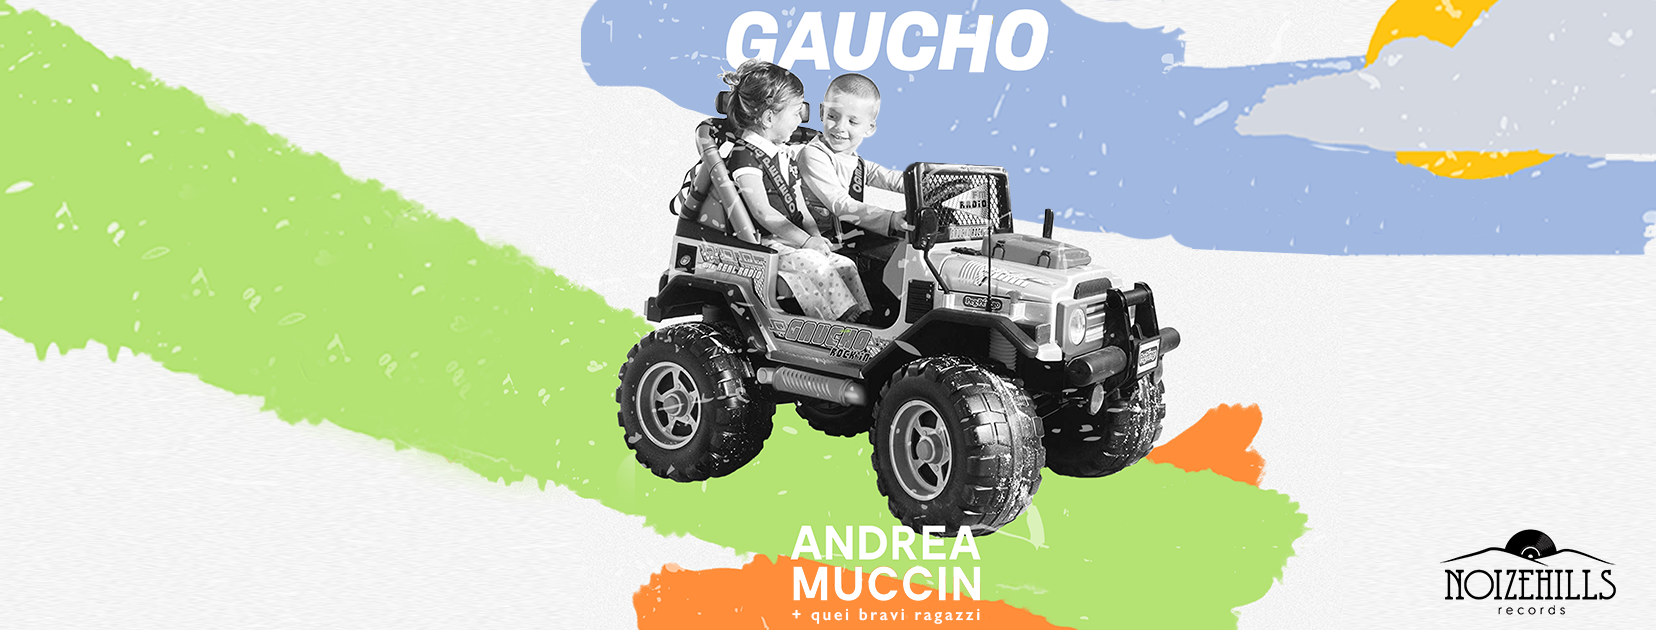 L’intervista – Andrea Muccin ci parla di “Gaucho” in rotazione radiofonica da gennaio